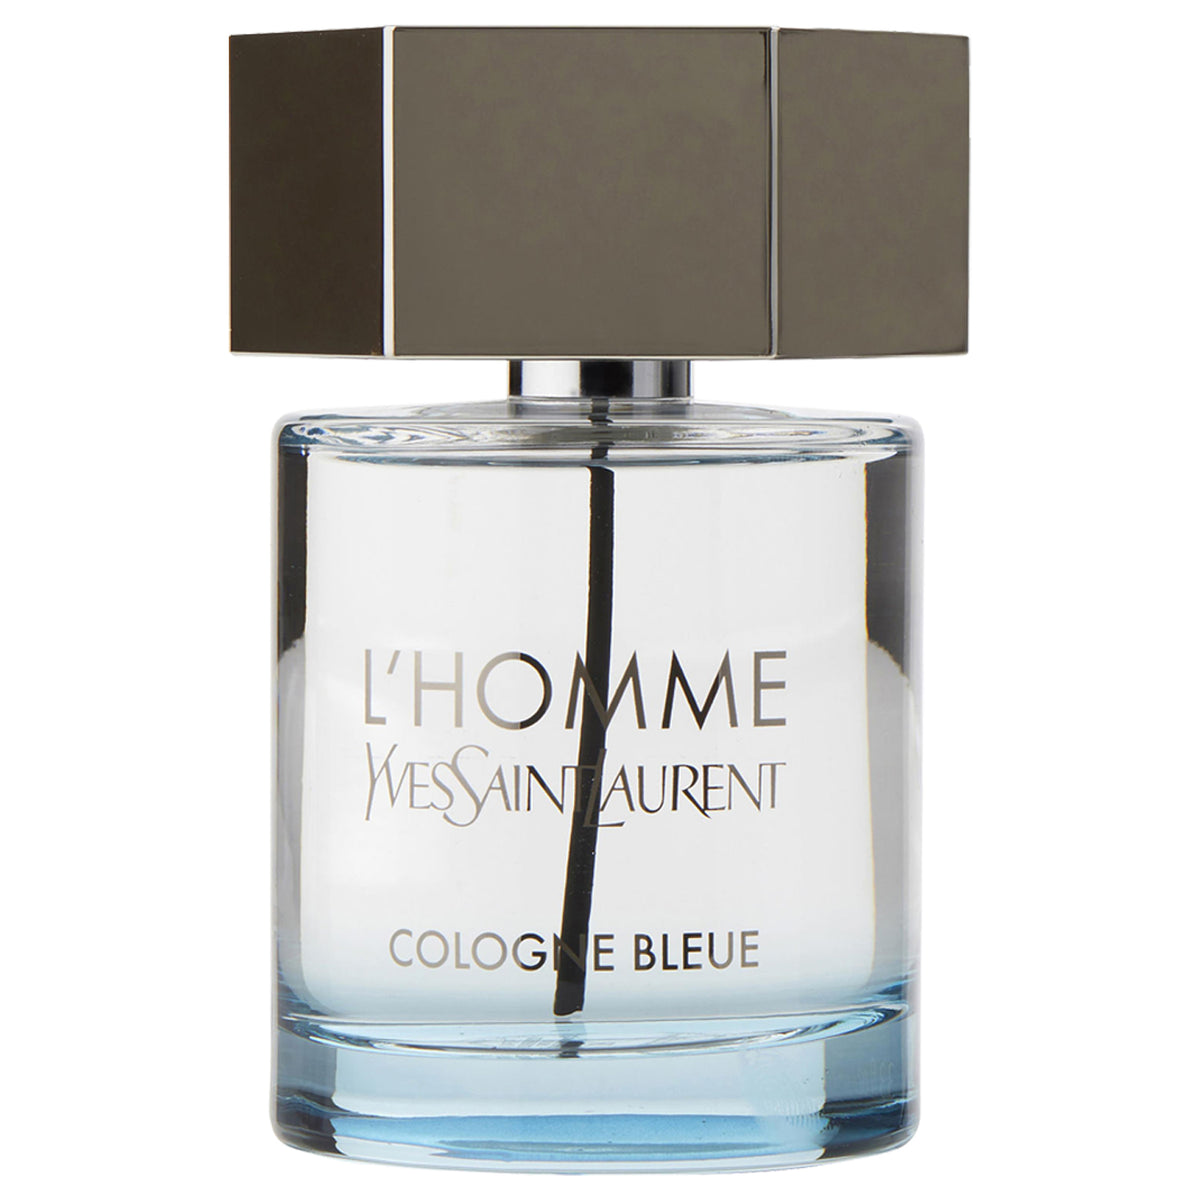 Yves Saint Laurent L'Homme Cologne Bleue 3.4 oz